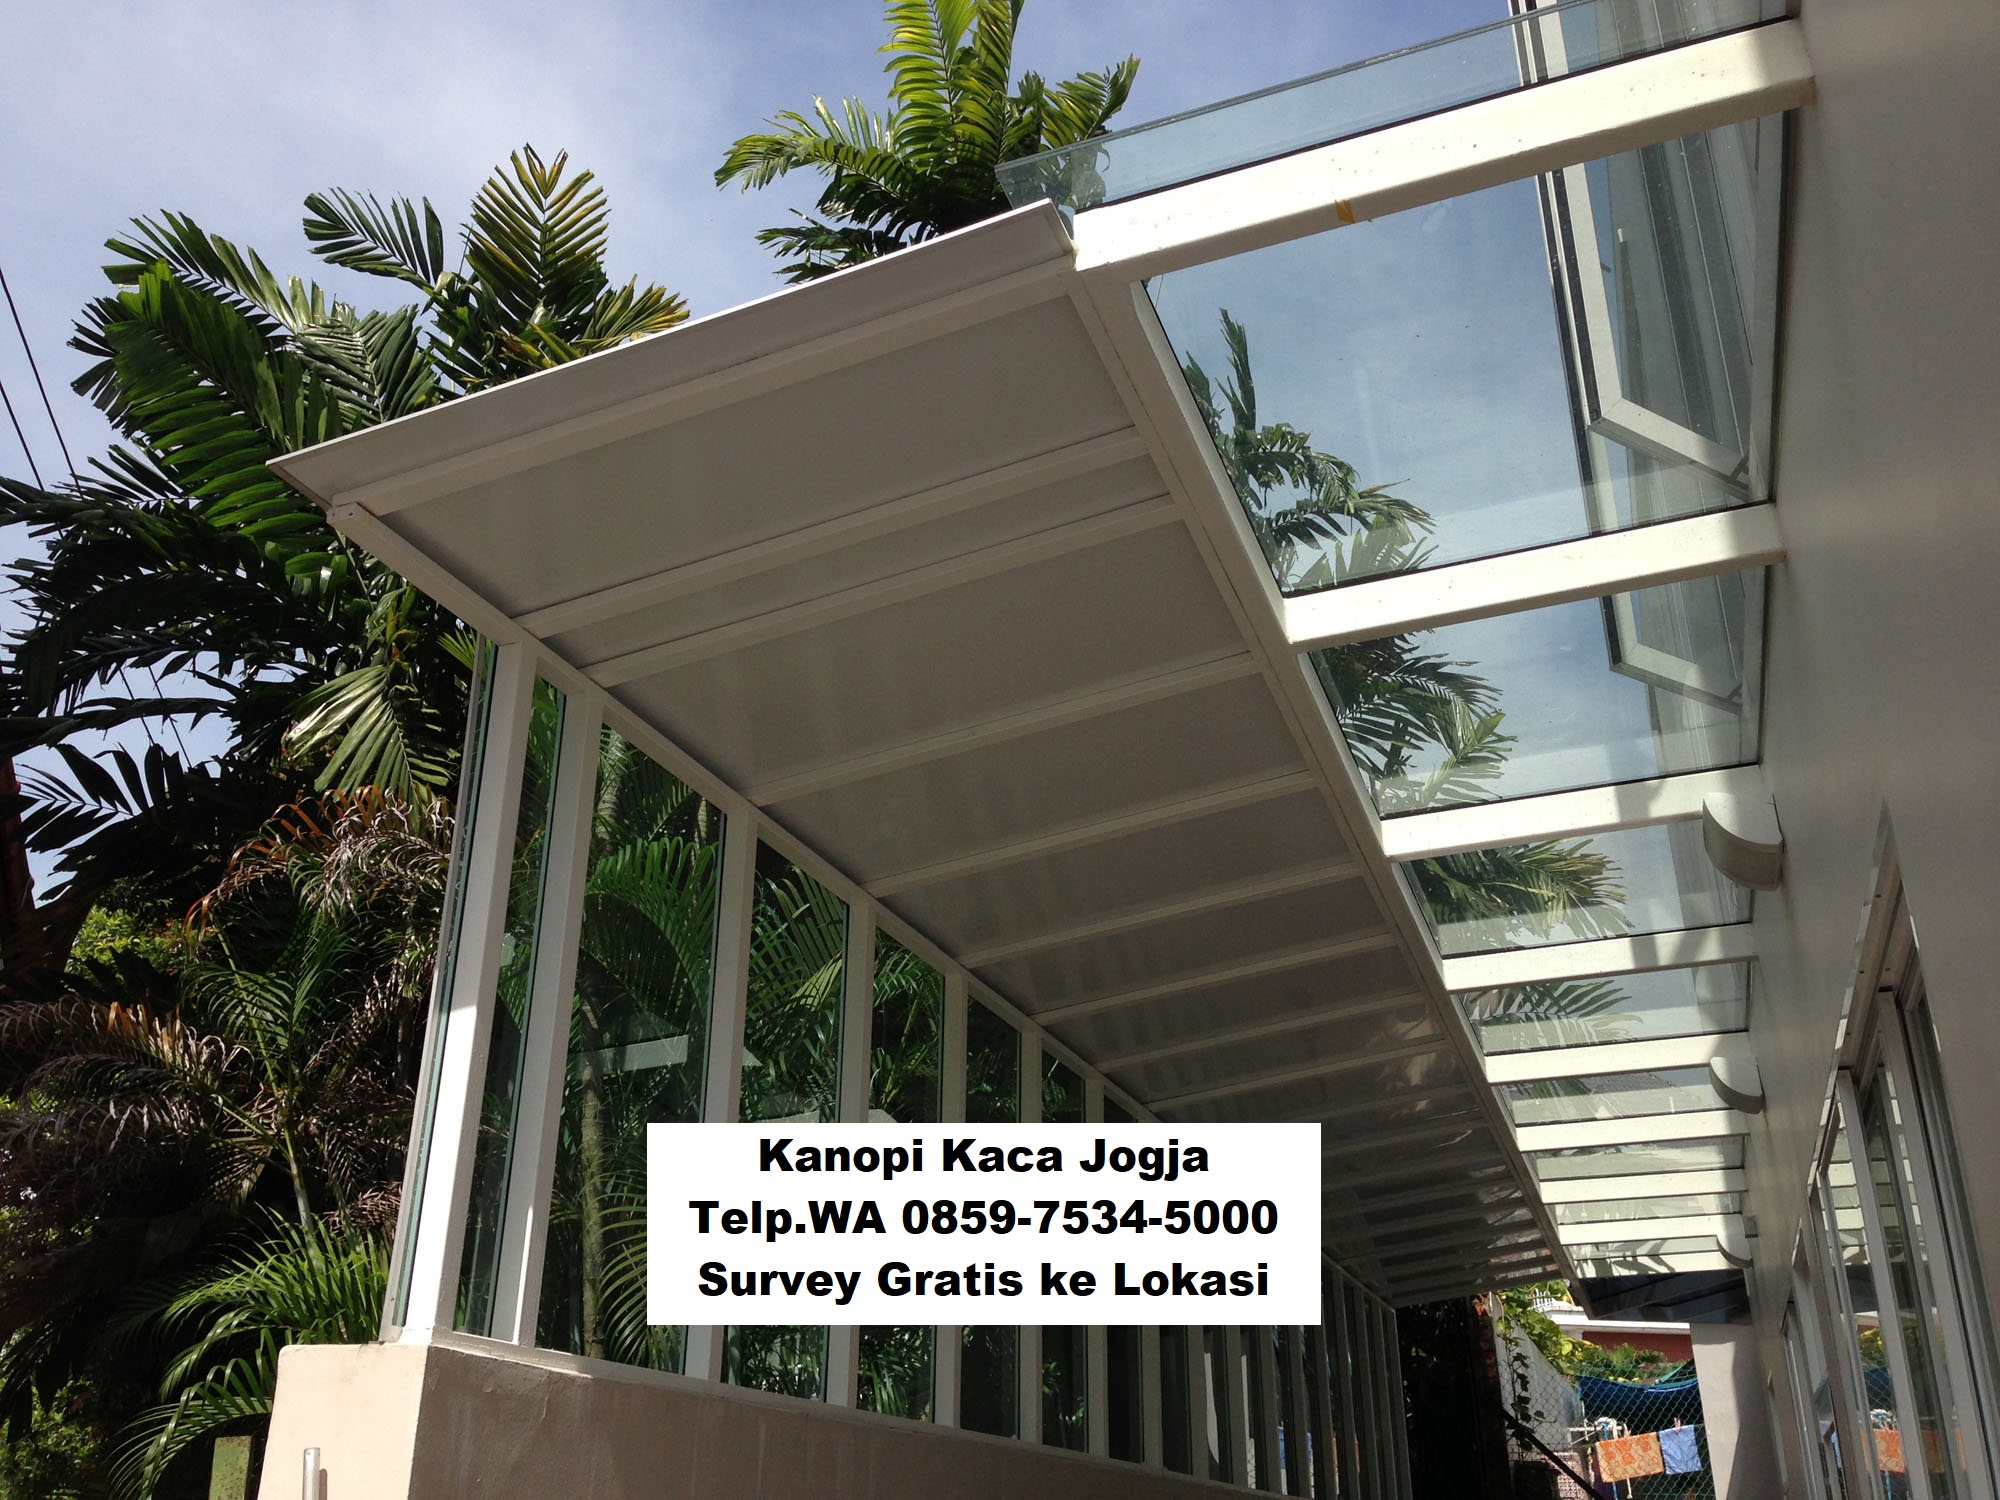 Jasa Pembuatan Kanopi Tempered Glass Kaca di Jogja